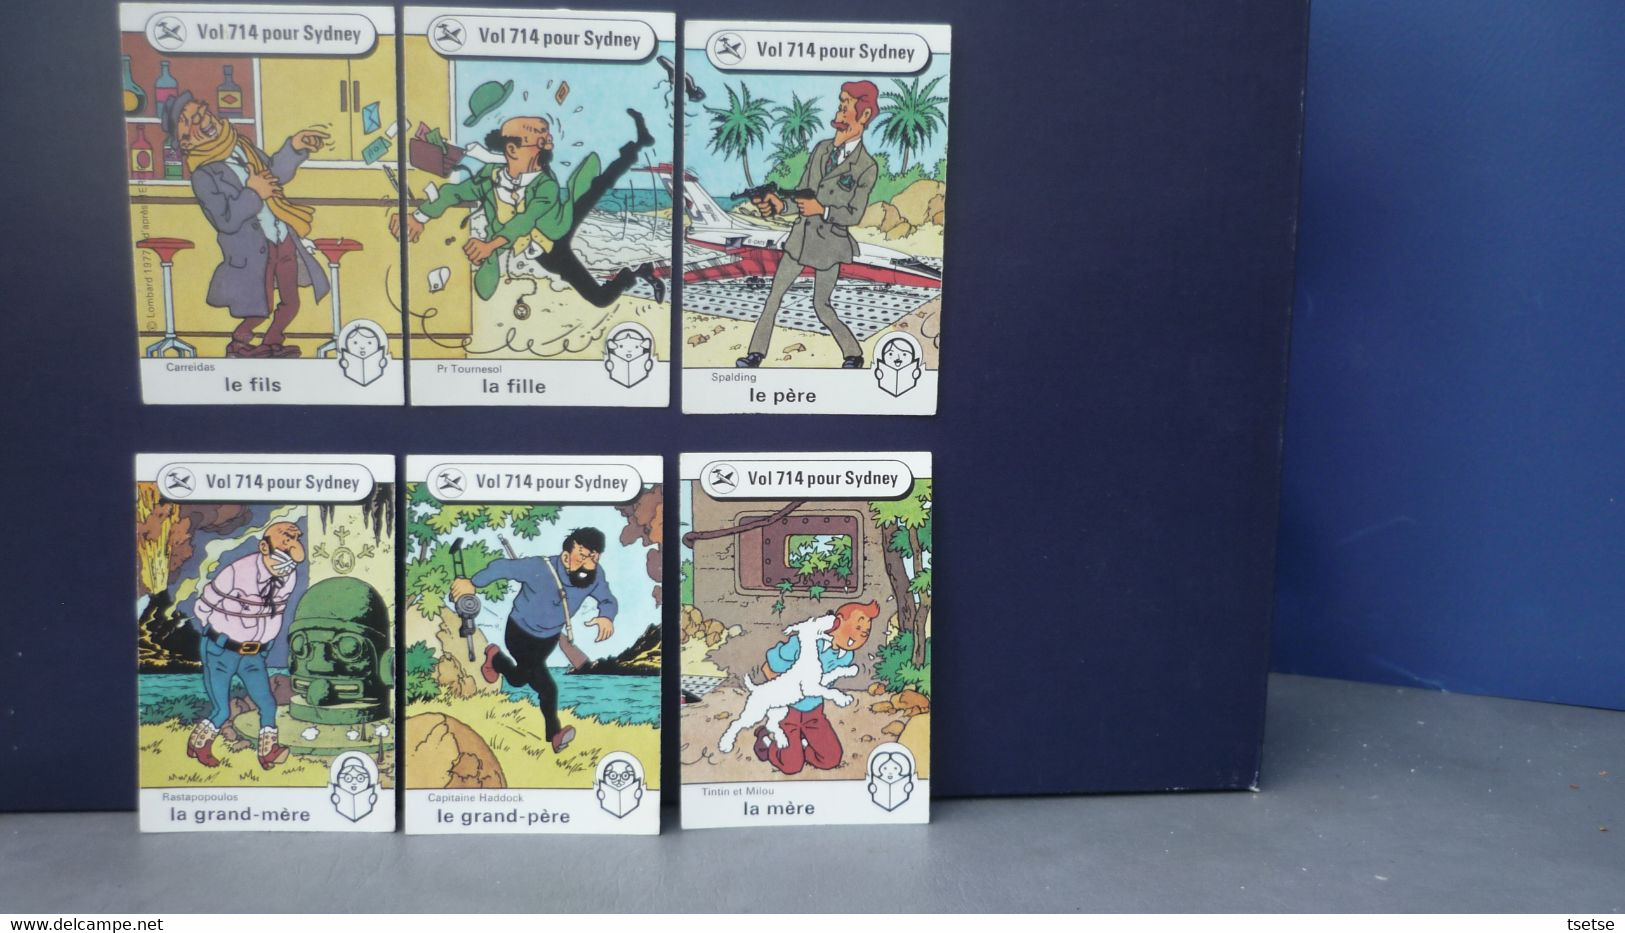 Tintin / Hergé -Jeu de 7 familles (42 cartes) sous boîte carton - Lombard 1977